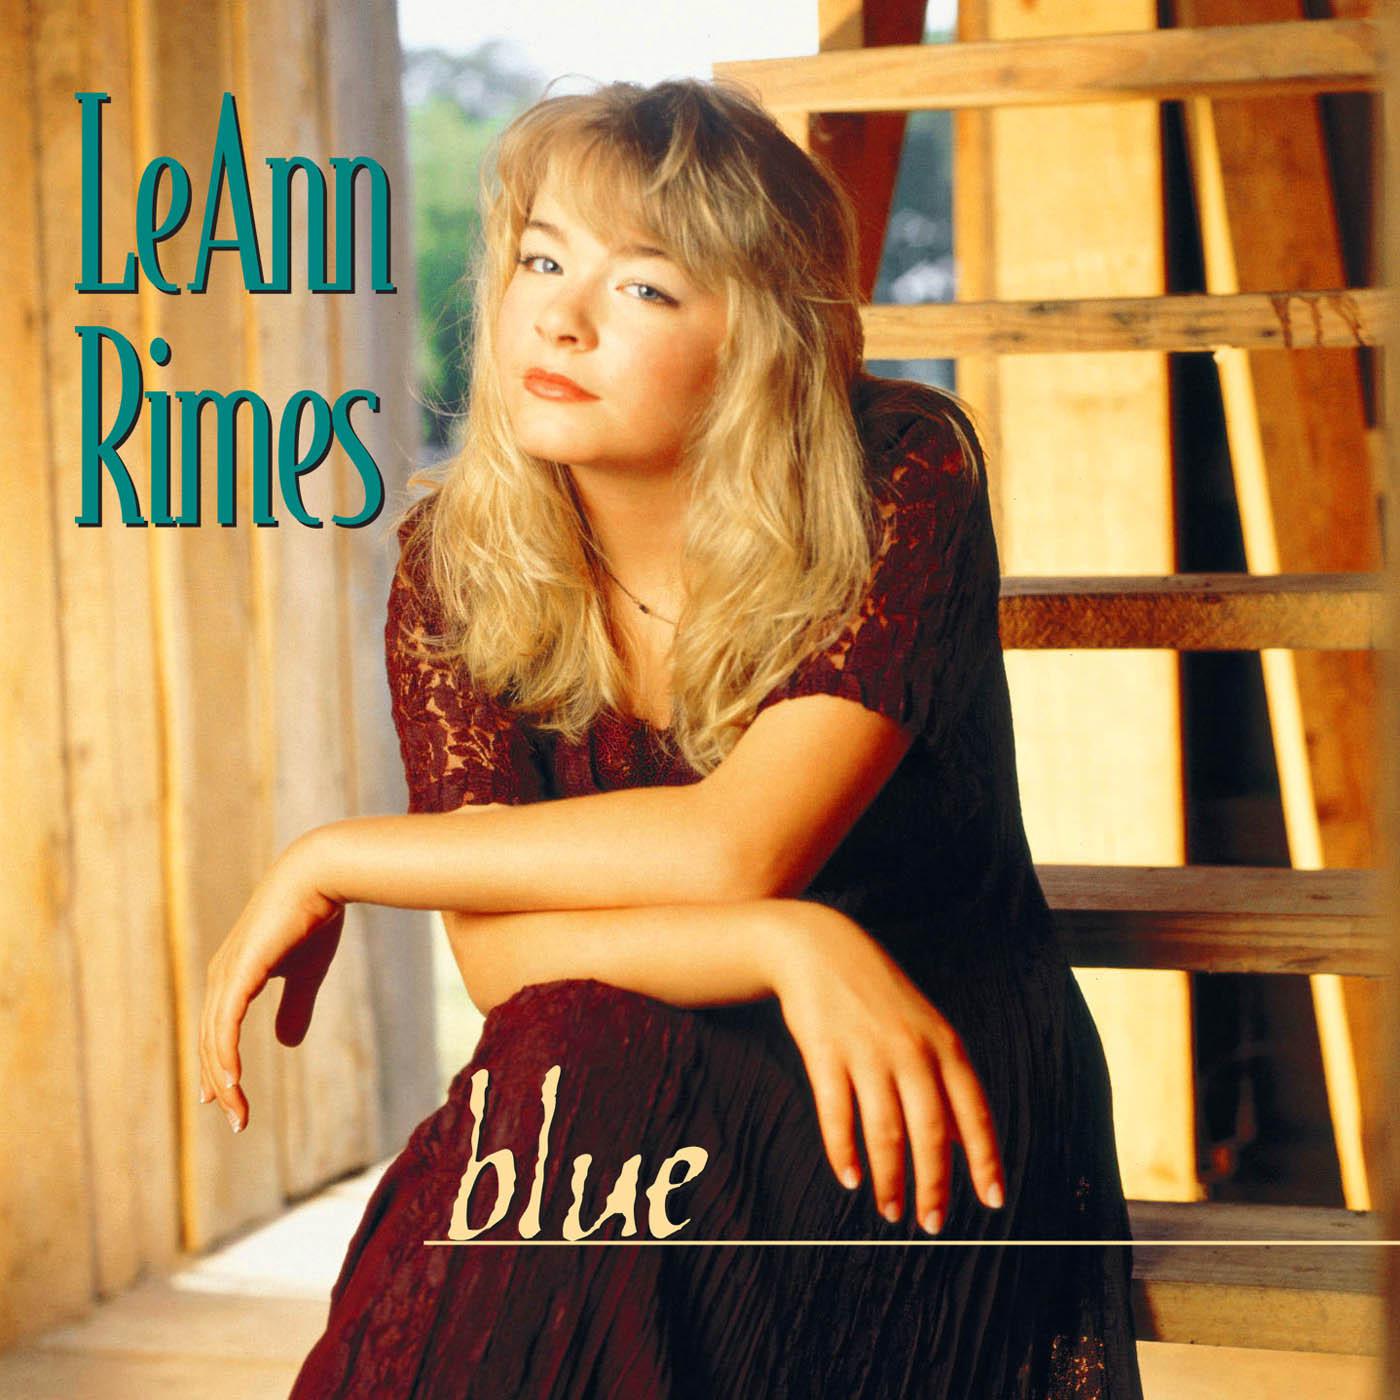 LeAnn Rimes - Cattle Call